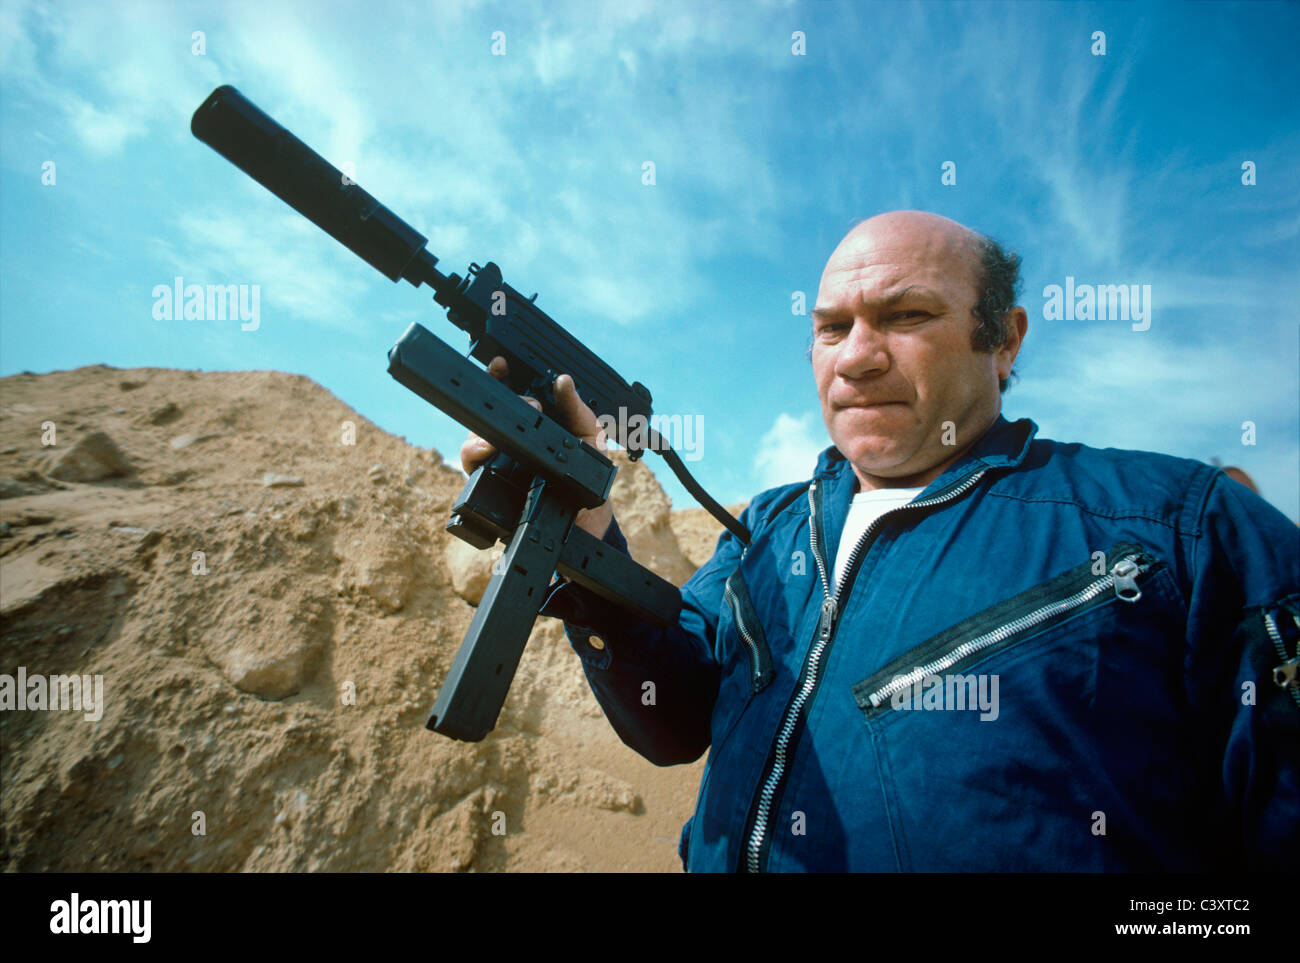 Uziel Gal, le concepteur et l'homonyme de pistolet-mitrailleur Uzi, tenant une mini-uzi pistolet à un croisement de magazine. Israël Banque D'Images